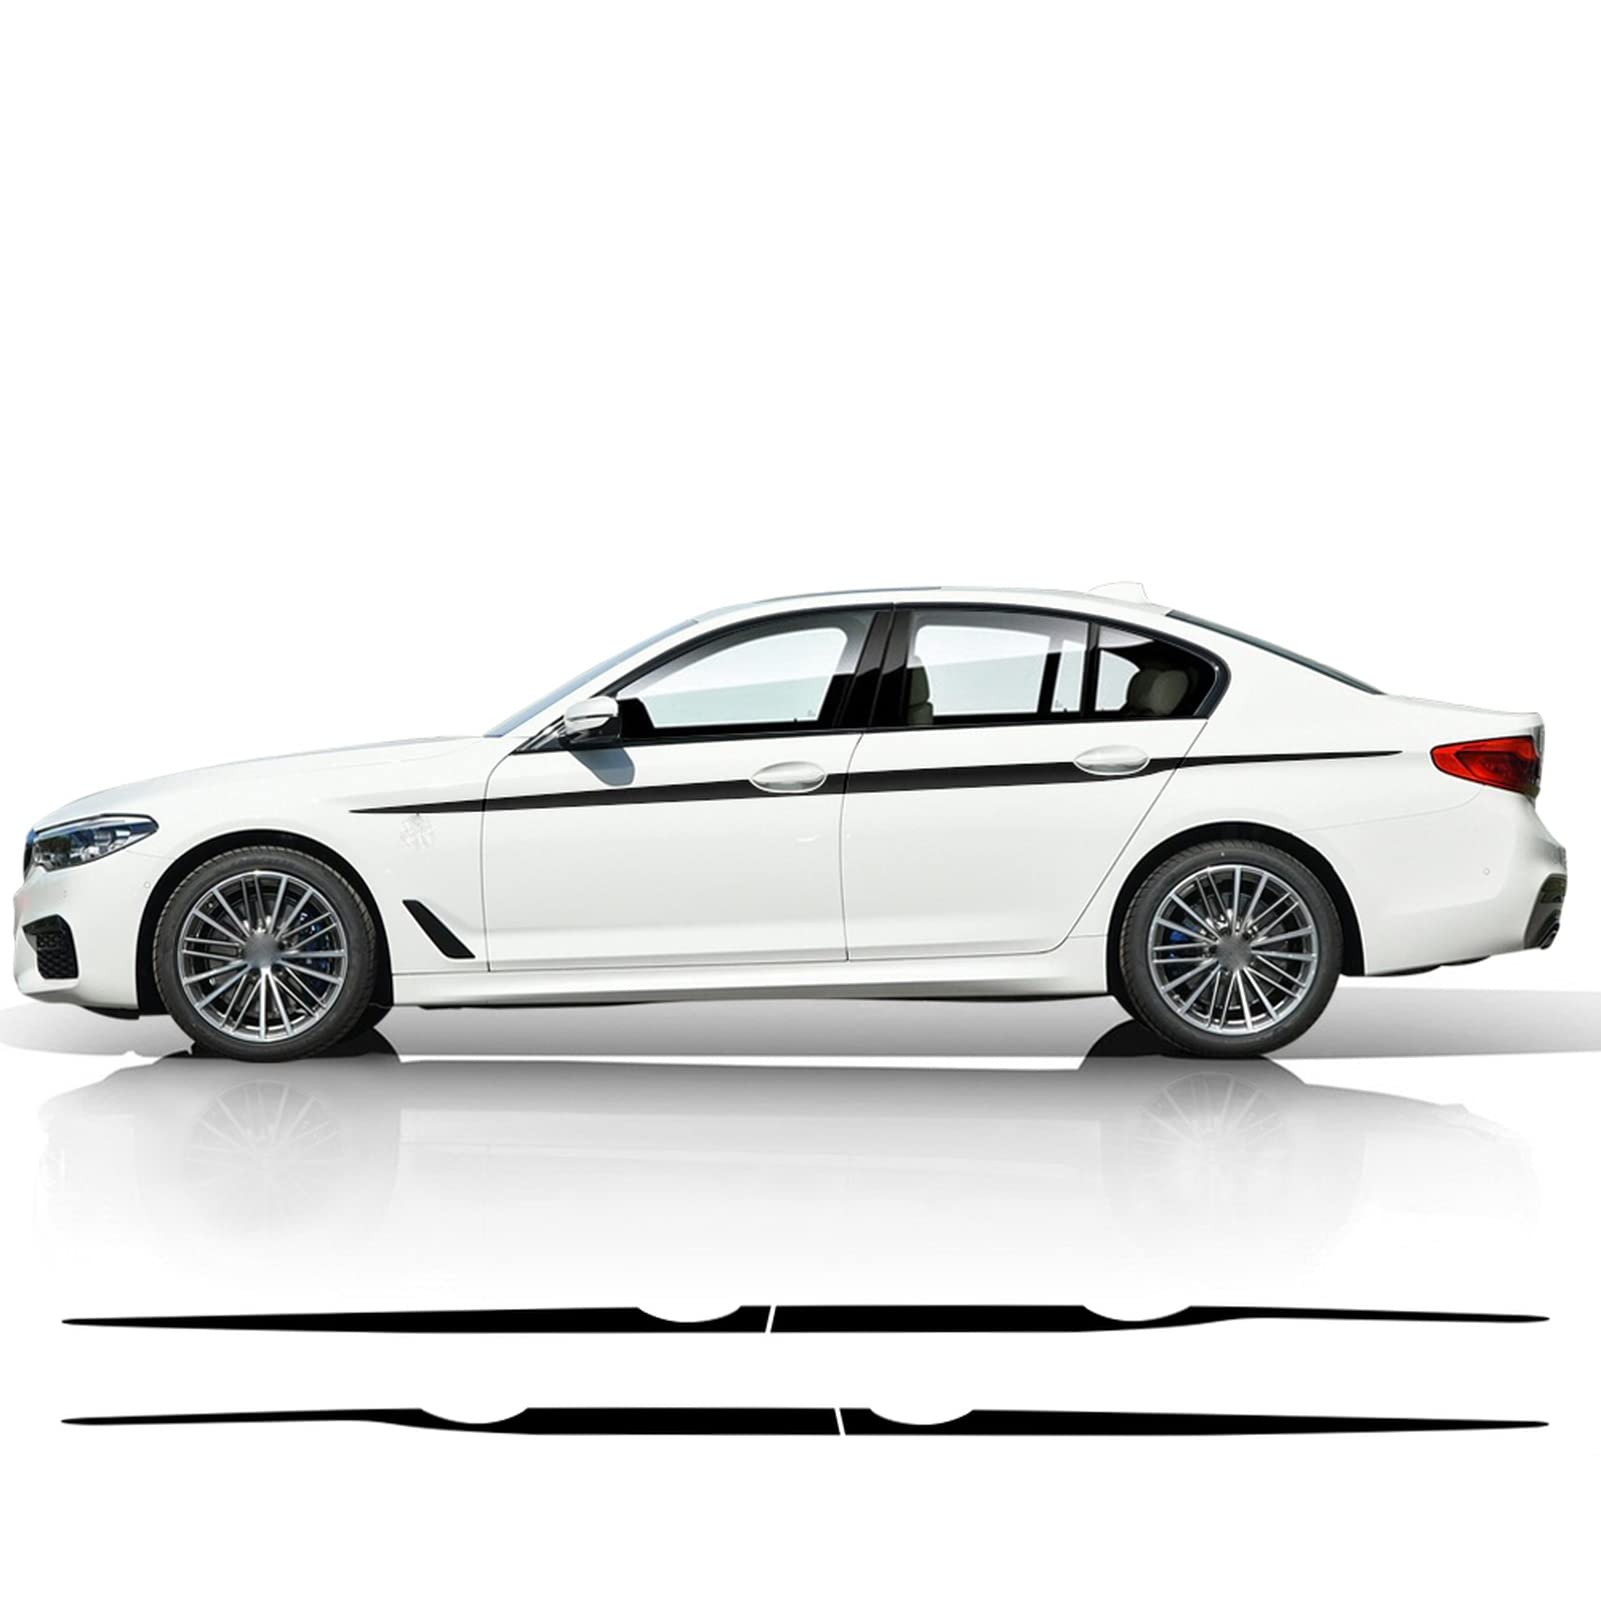 Auto Seitenstreifen Seitenaufkleber Aufkleber Grafiken, Für BMW F20 F22 F23 F30 F32 F33 F10 G30 F48 F25 F26 F15 F16 Zubehör 2 Stück seitlicher Taillenlinien-Aufkleber von MURPWDZ